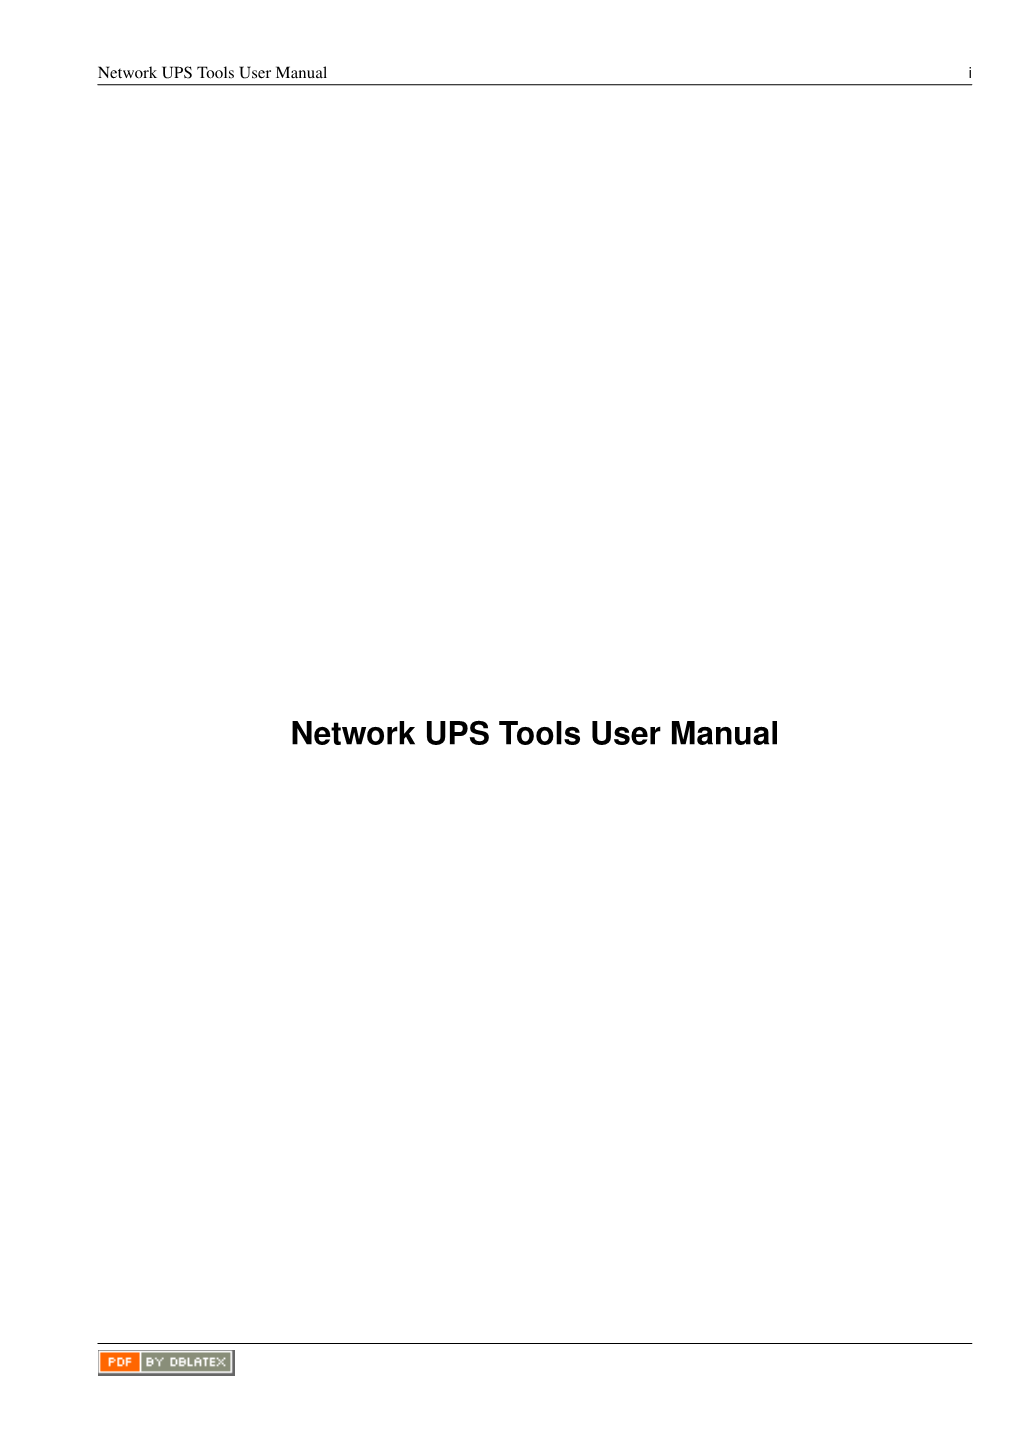 Network UPS Tools User Manual I